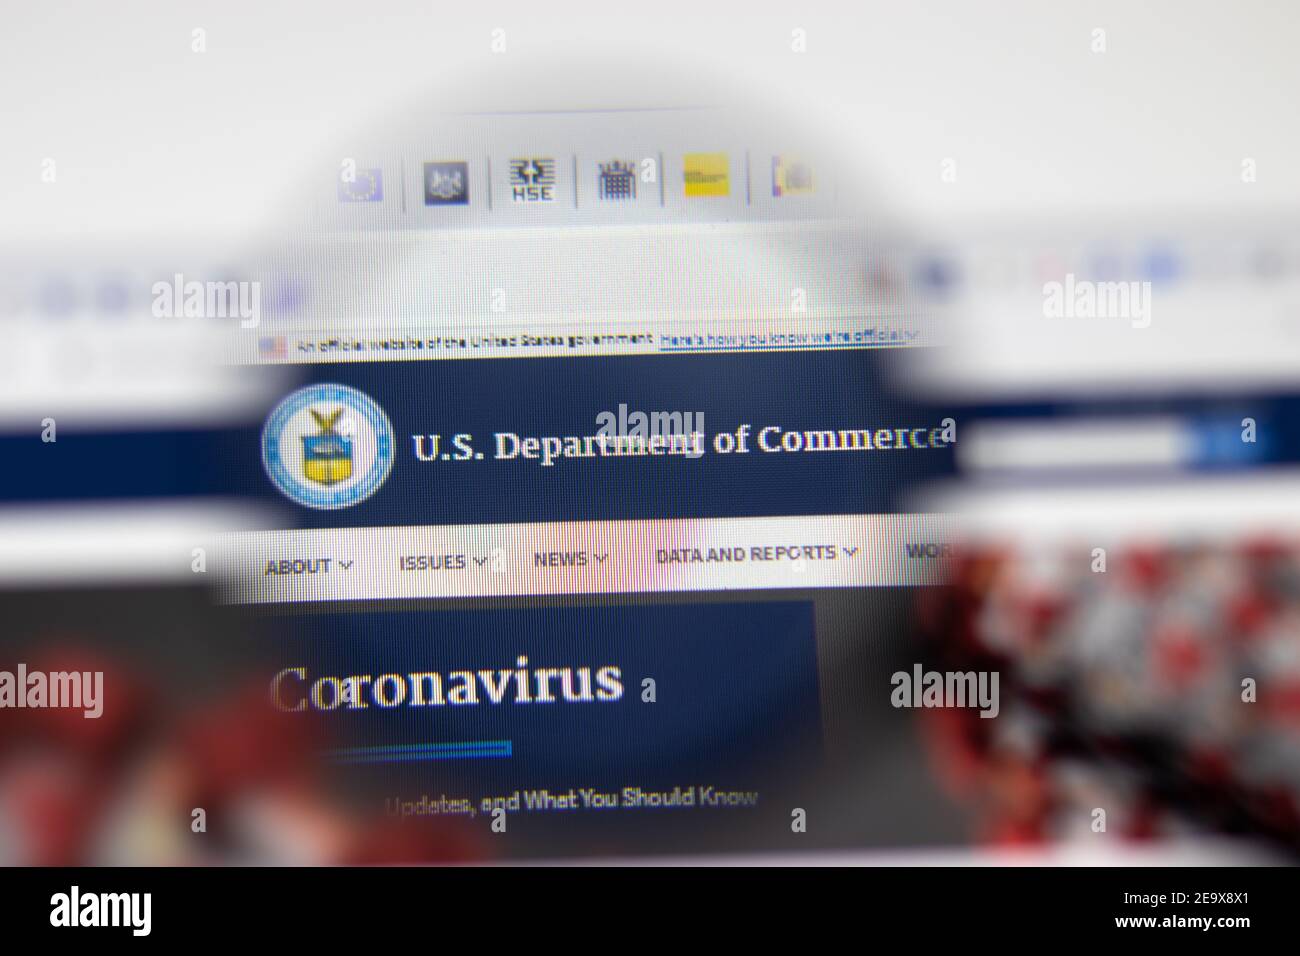 Los Angeles, USA - 1 Febbraio 2021: Pagina del sito del Dipartimento del Commercio DEGLI STATI UNITI. Commerce.gov logo sullo schermo, editoriale illustrativo Foto Stock